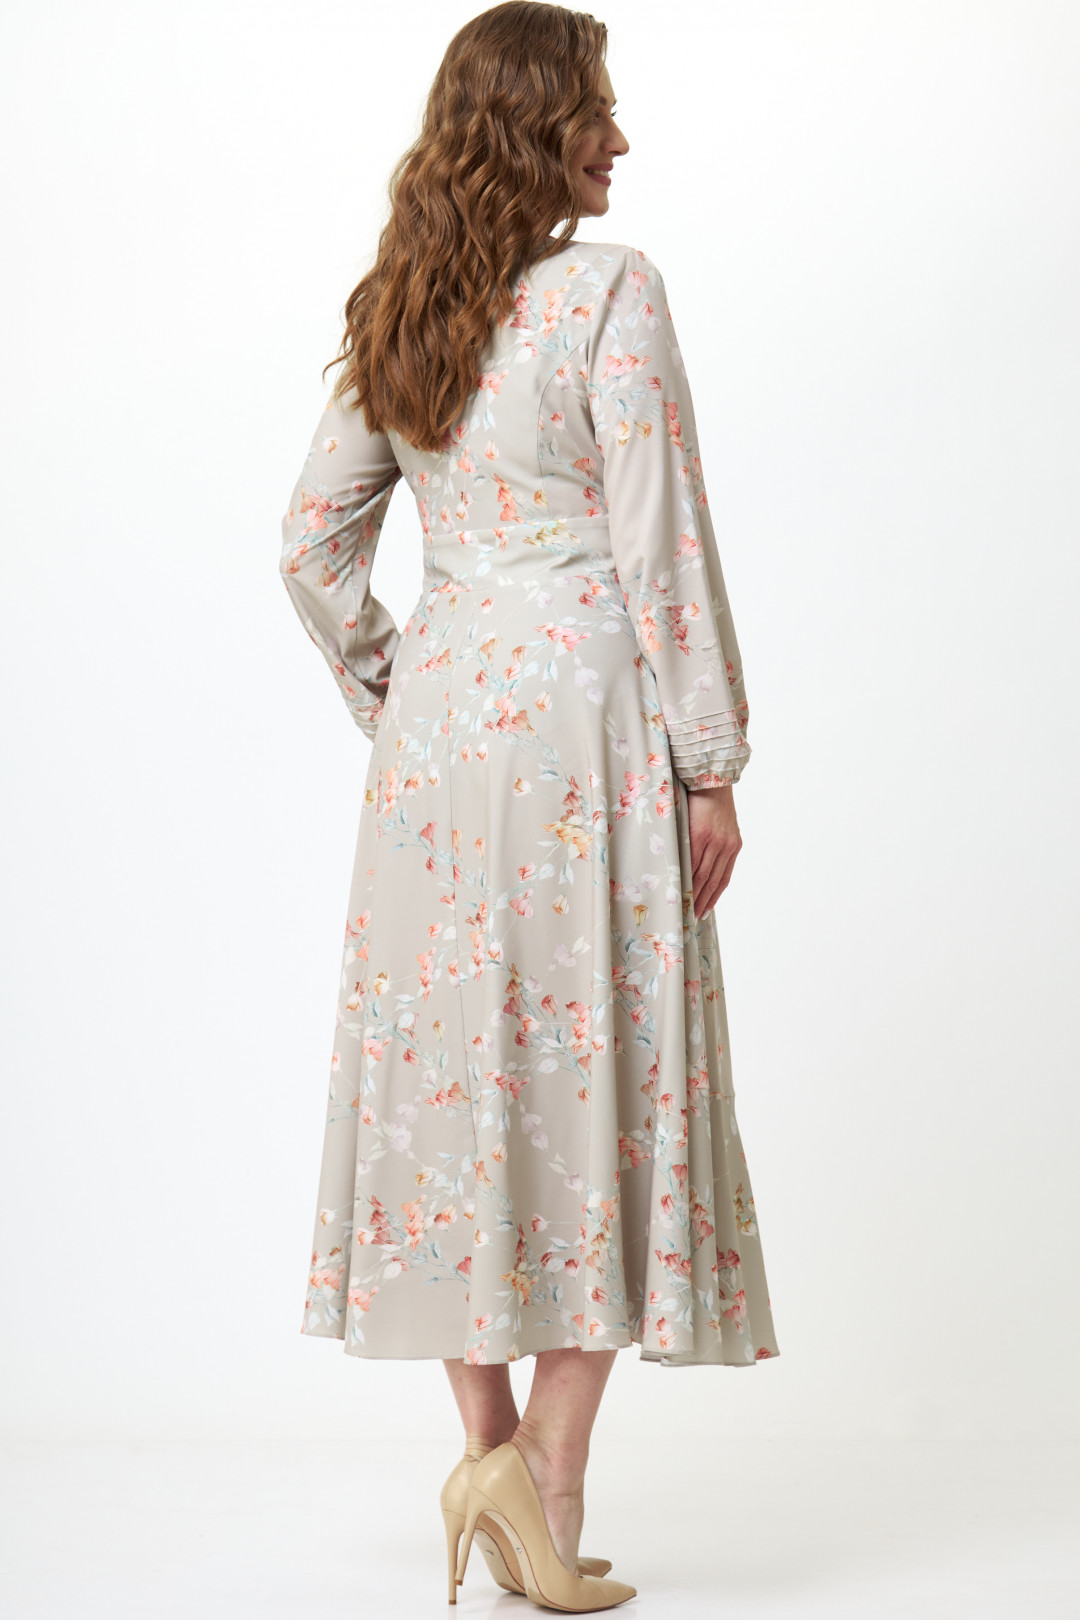 Платье ТЭФФИ-стиль 1483 Тюльпаны на песочном